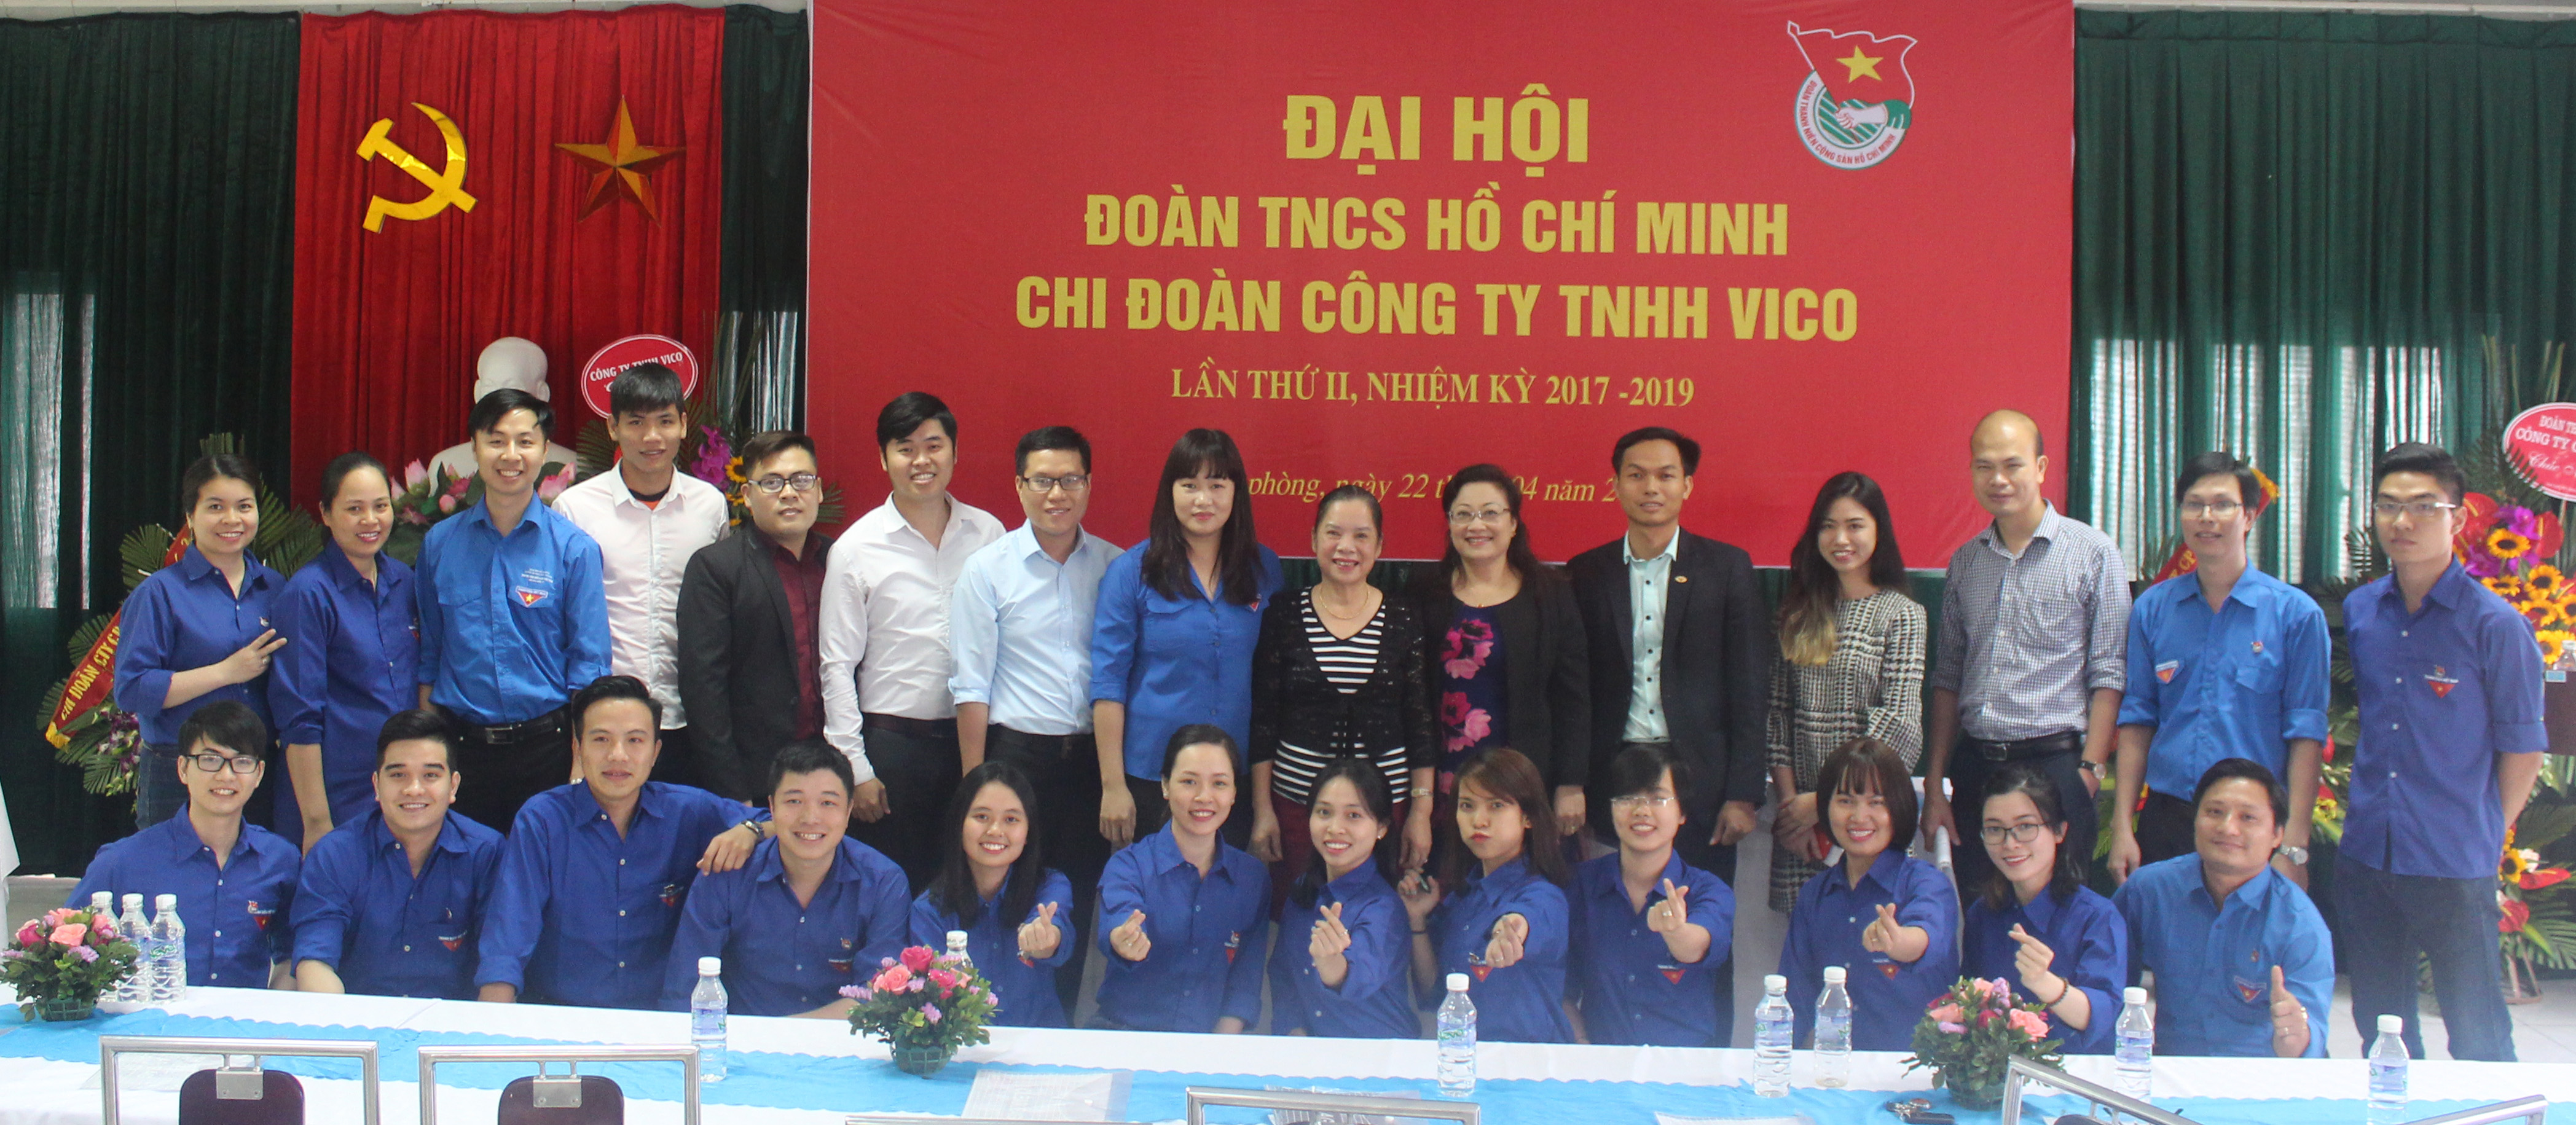 Đại hội Đoàn TNCS Hồ Chí Minh chi đoàn Công ty TNHH VICO lần thứ II, nhiệm kì 2017 - 2019